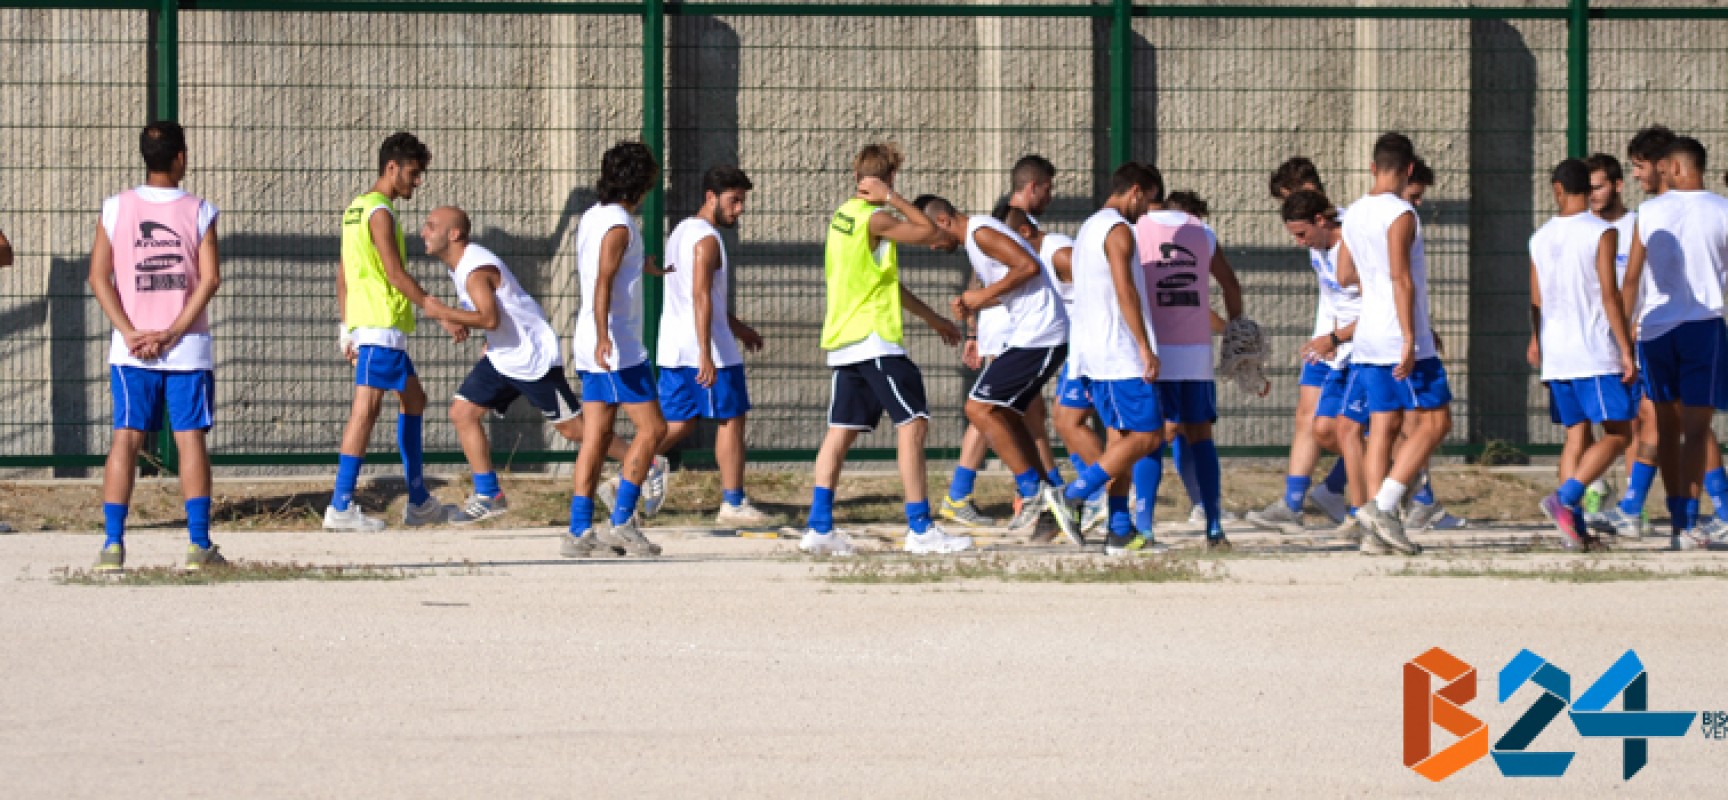 Il 1 luglio l’Unione Calcio seleziona giovani calciatori per la prima squadra